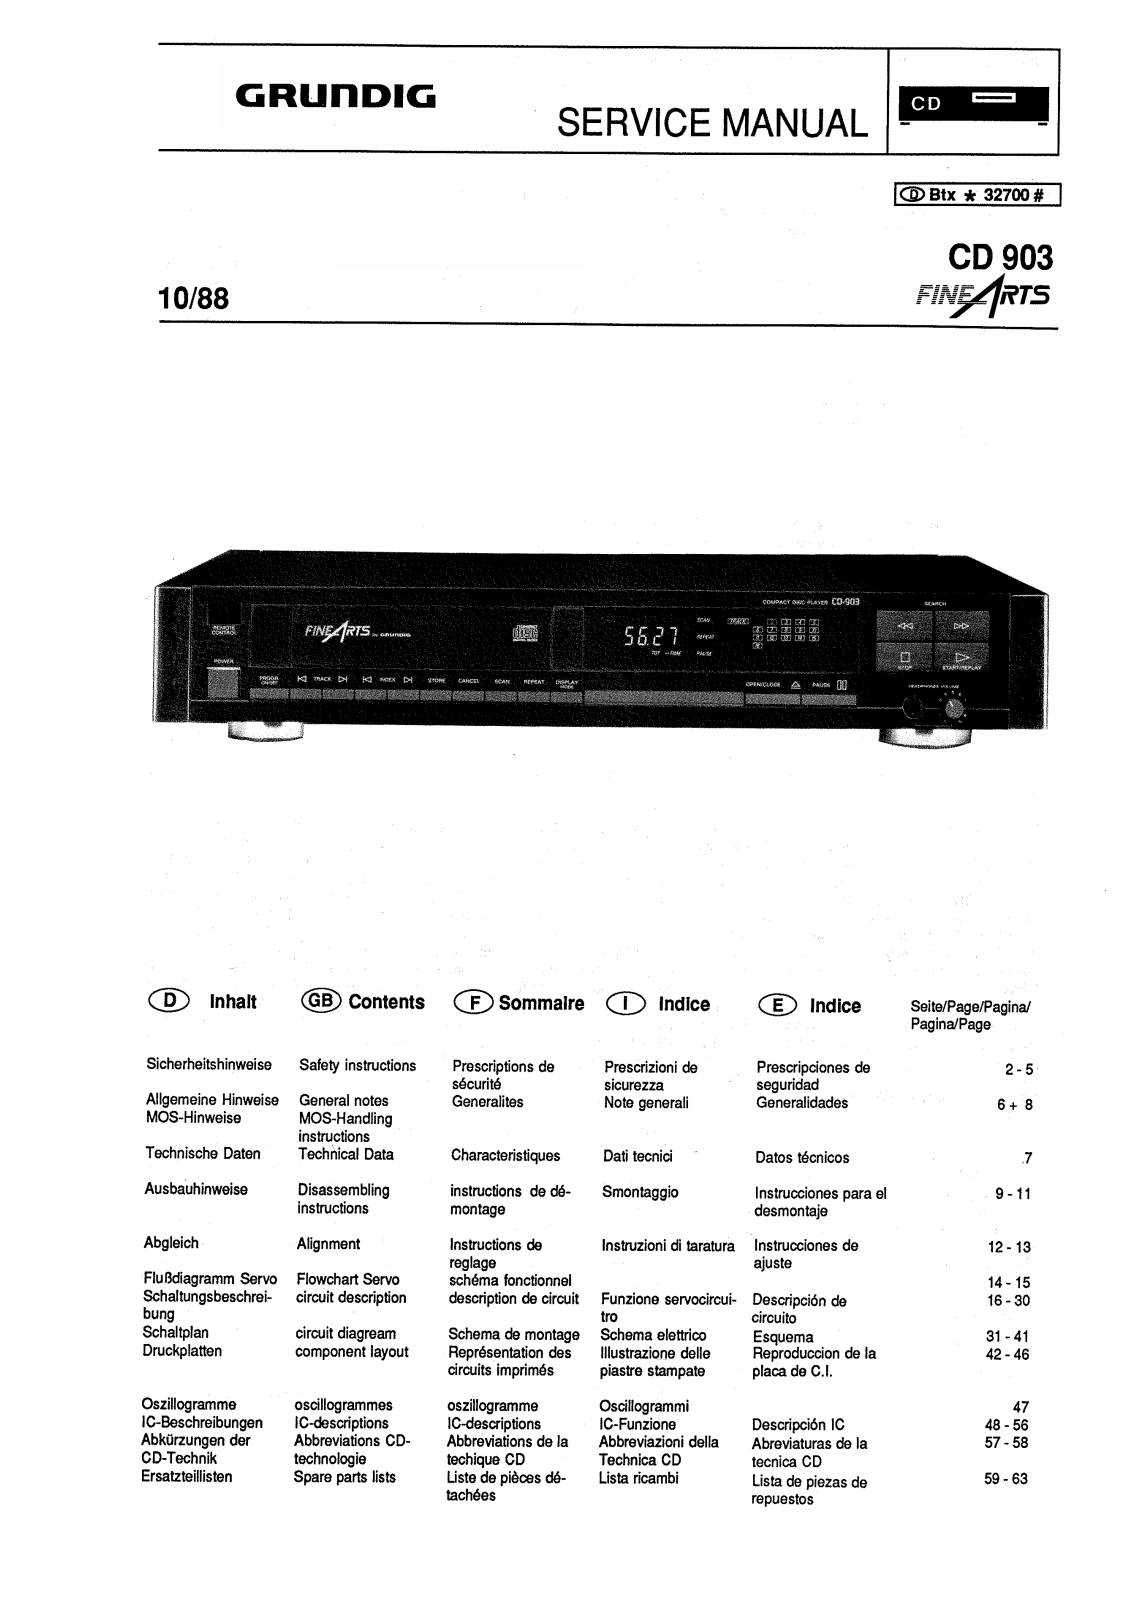 Grundig CD-903 Schematic